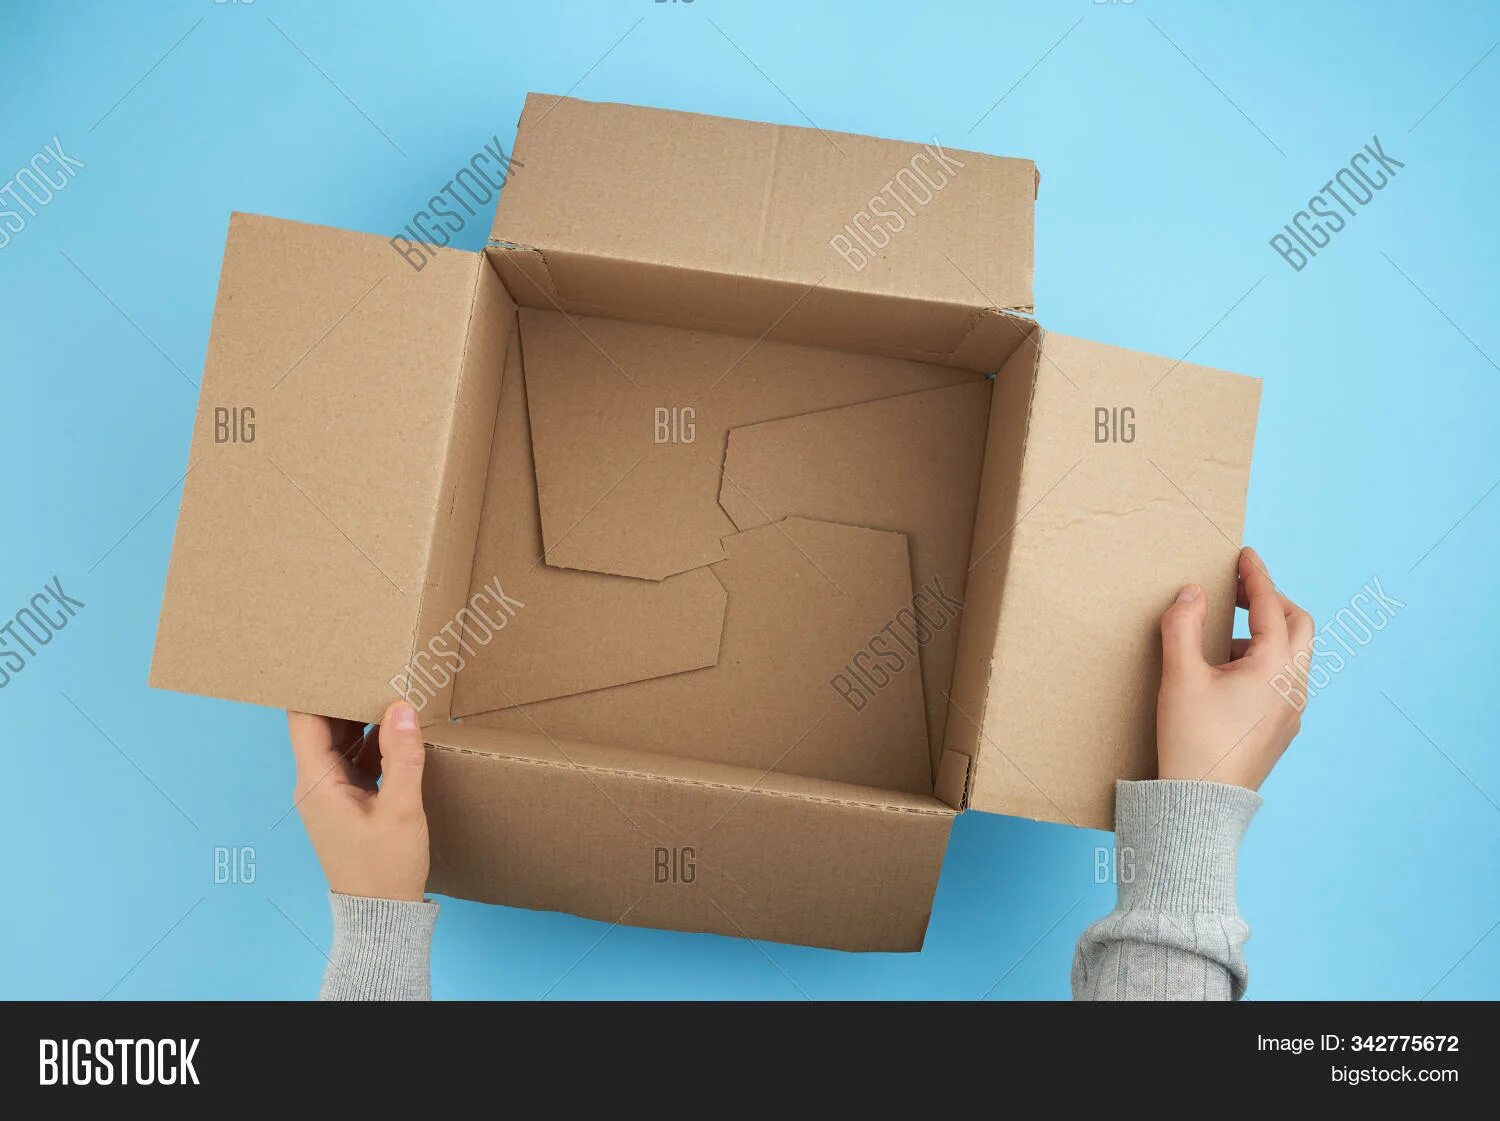 Открой коробку 5. Открывает коробку. Человек открывает коробку. Открытая коробка в руках. Коробка открытая в руках вид сверху.